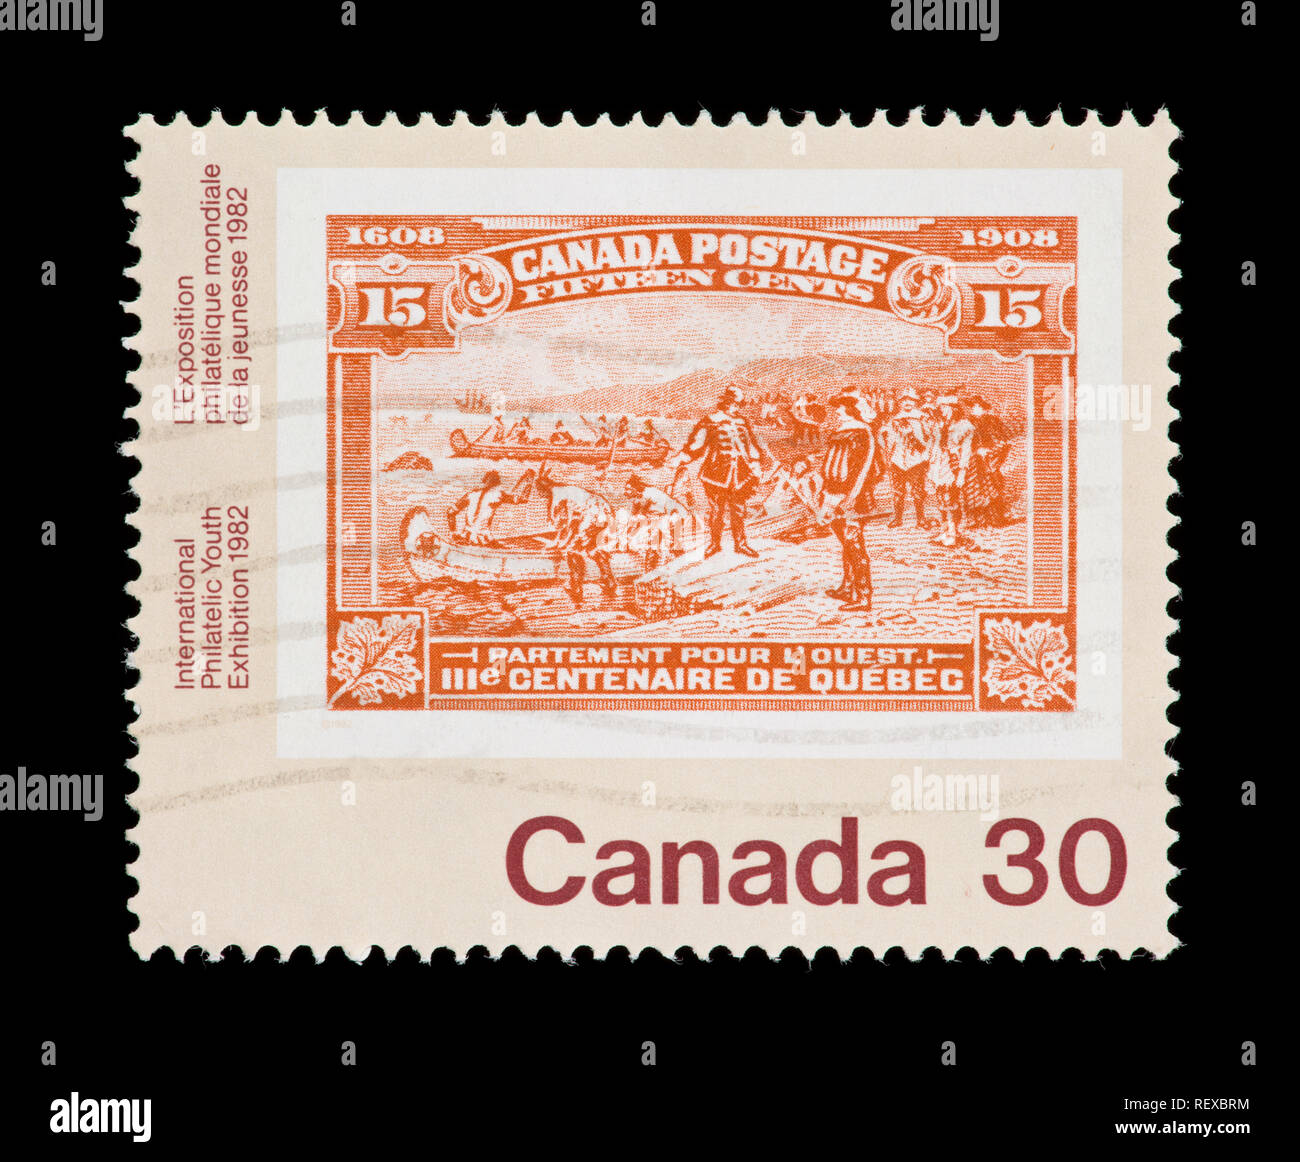 Francobollo dal Canada raffigurante una storica timbro canadese, rilasciati per il '91 filatelica internazionale mostra della Gioventù di Toronto Foto Stock